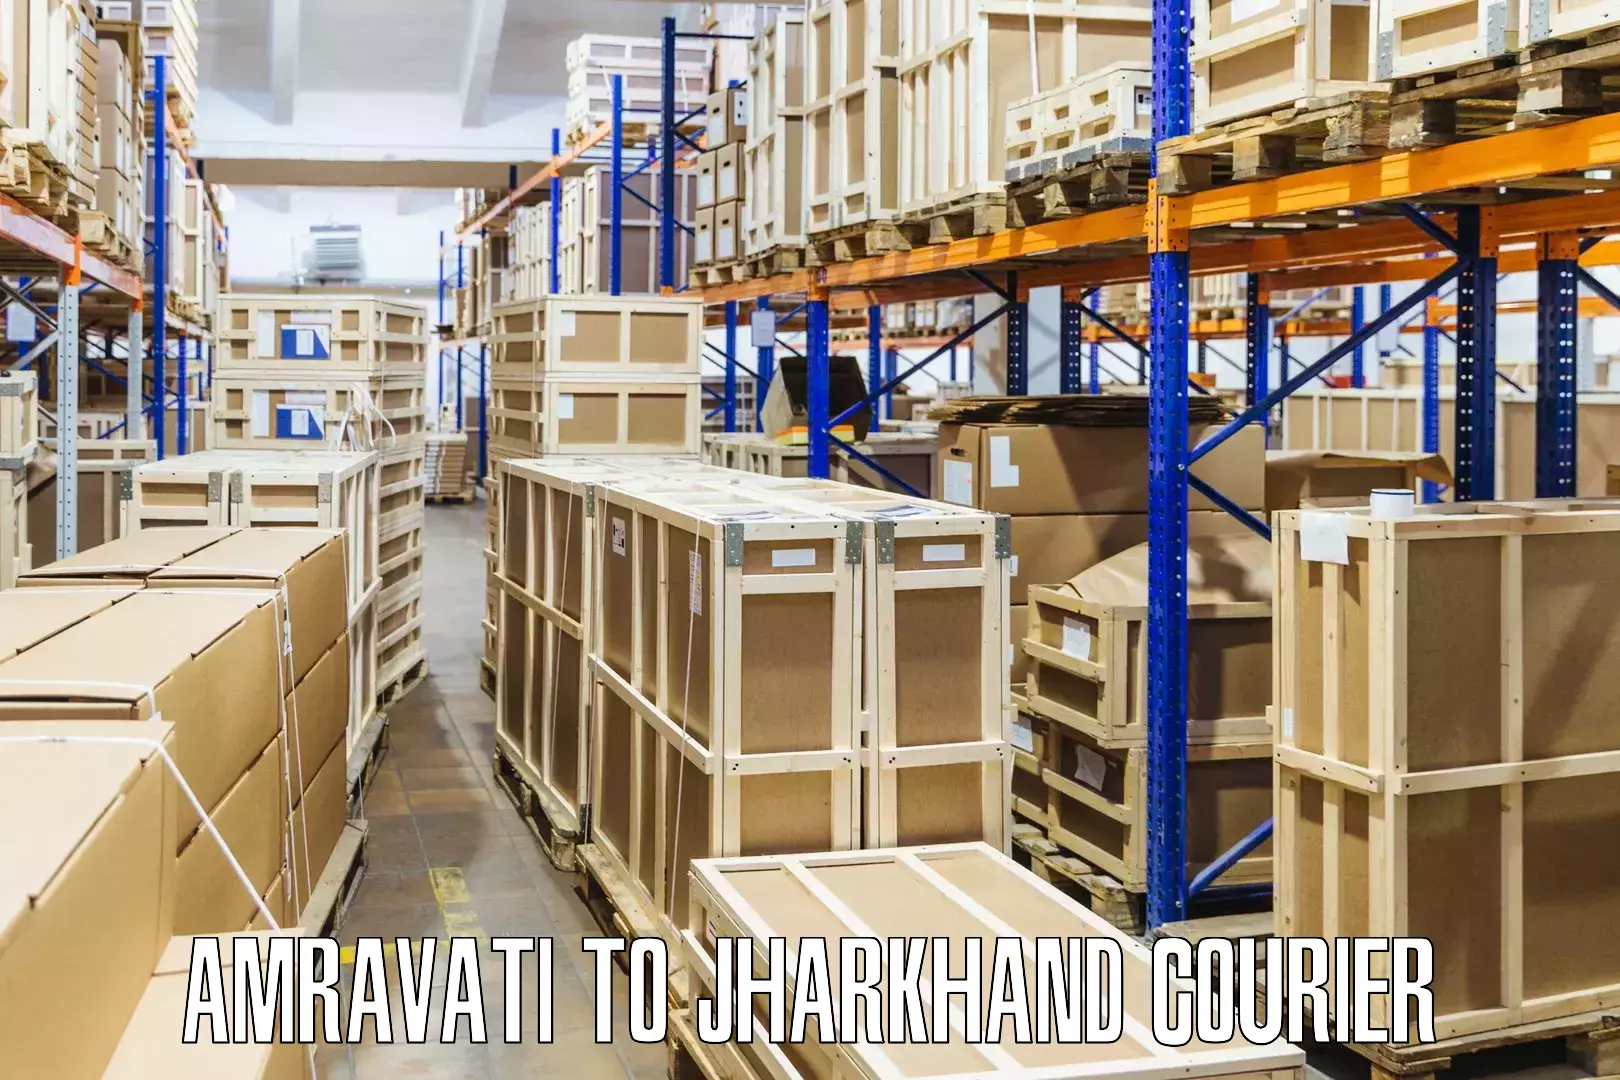 Tracking updates Amravati to Godabar Chatra